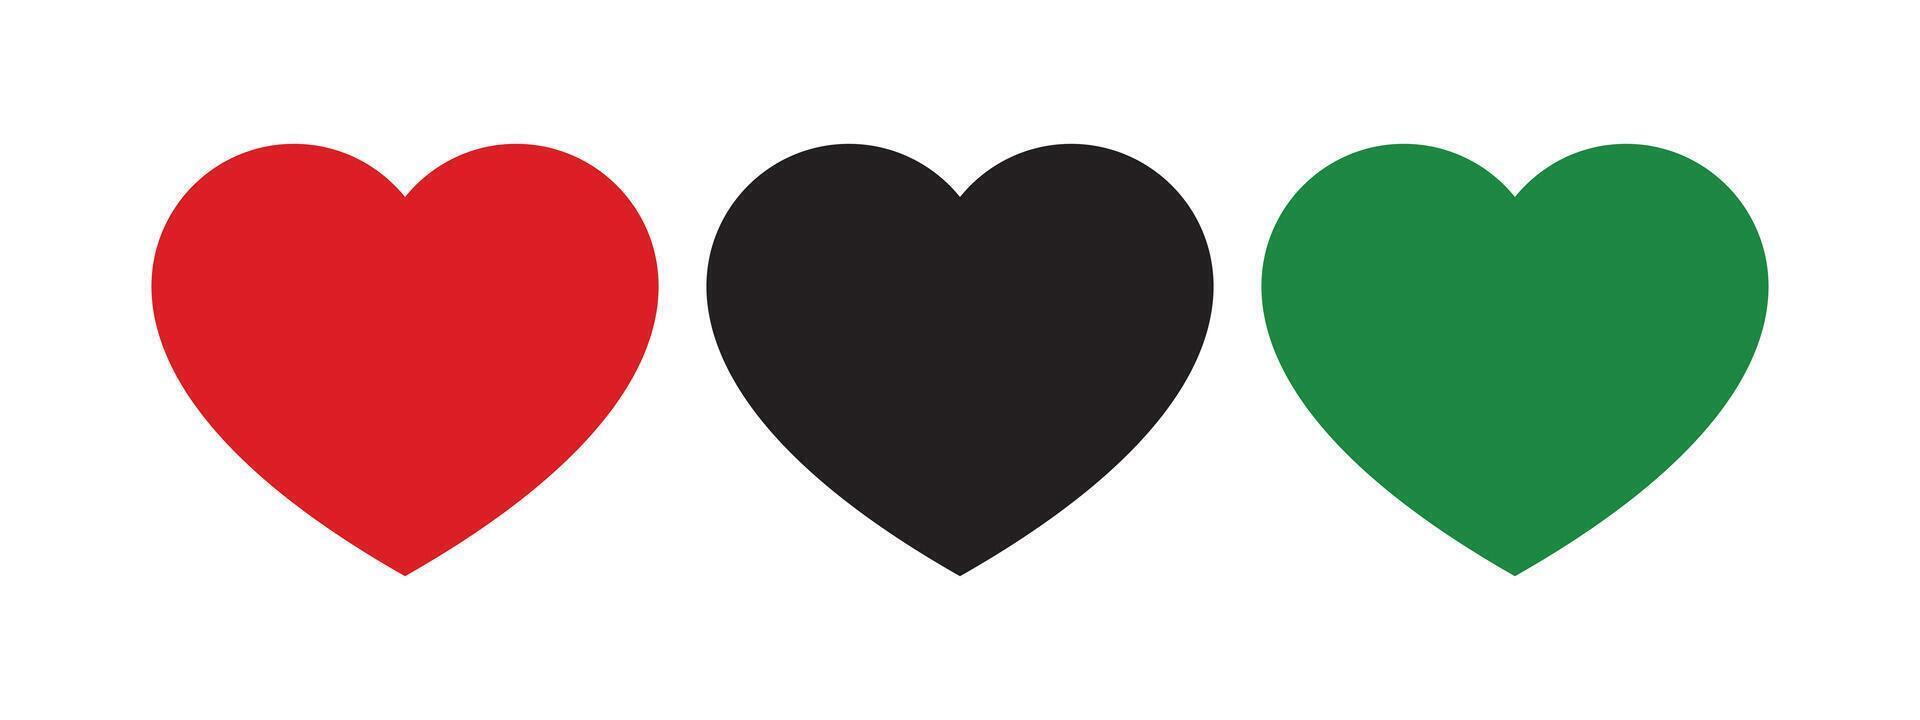 rosso, nero e verde colorato cuore forma icona come il colori di il panafricano bandiera. per juneteenth e nero storia mese. piatto vettore illustrazione.